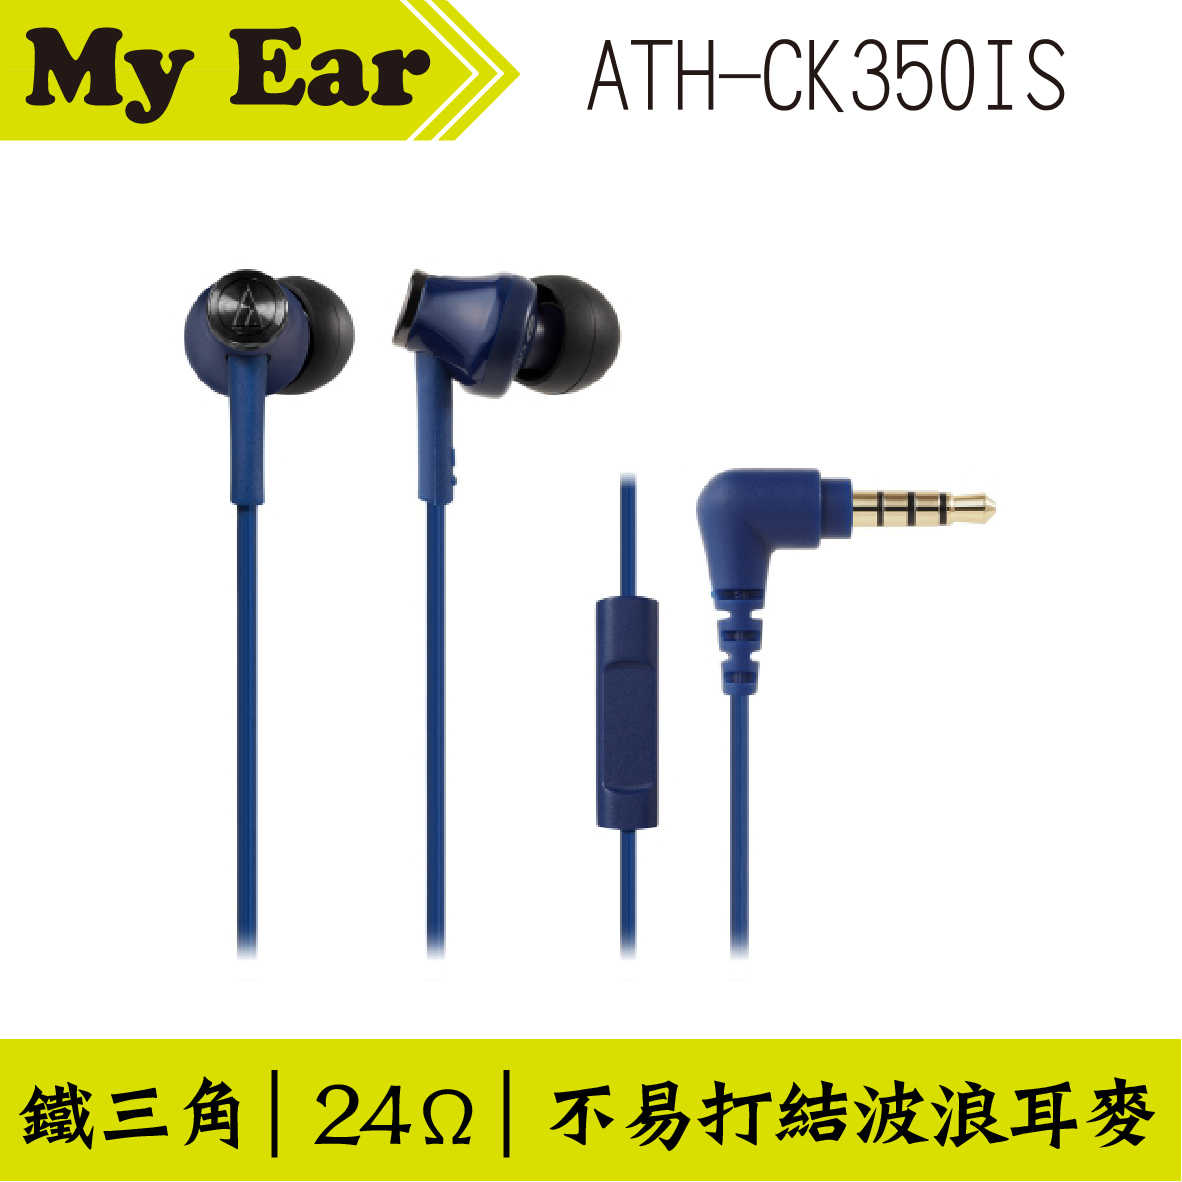 鐵三角 ATH-CK350IS 耳機麥克風 米色  | My Ear 耳機專門店